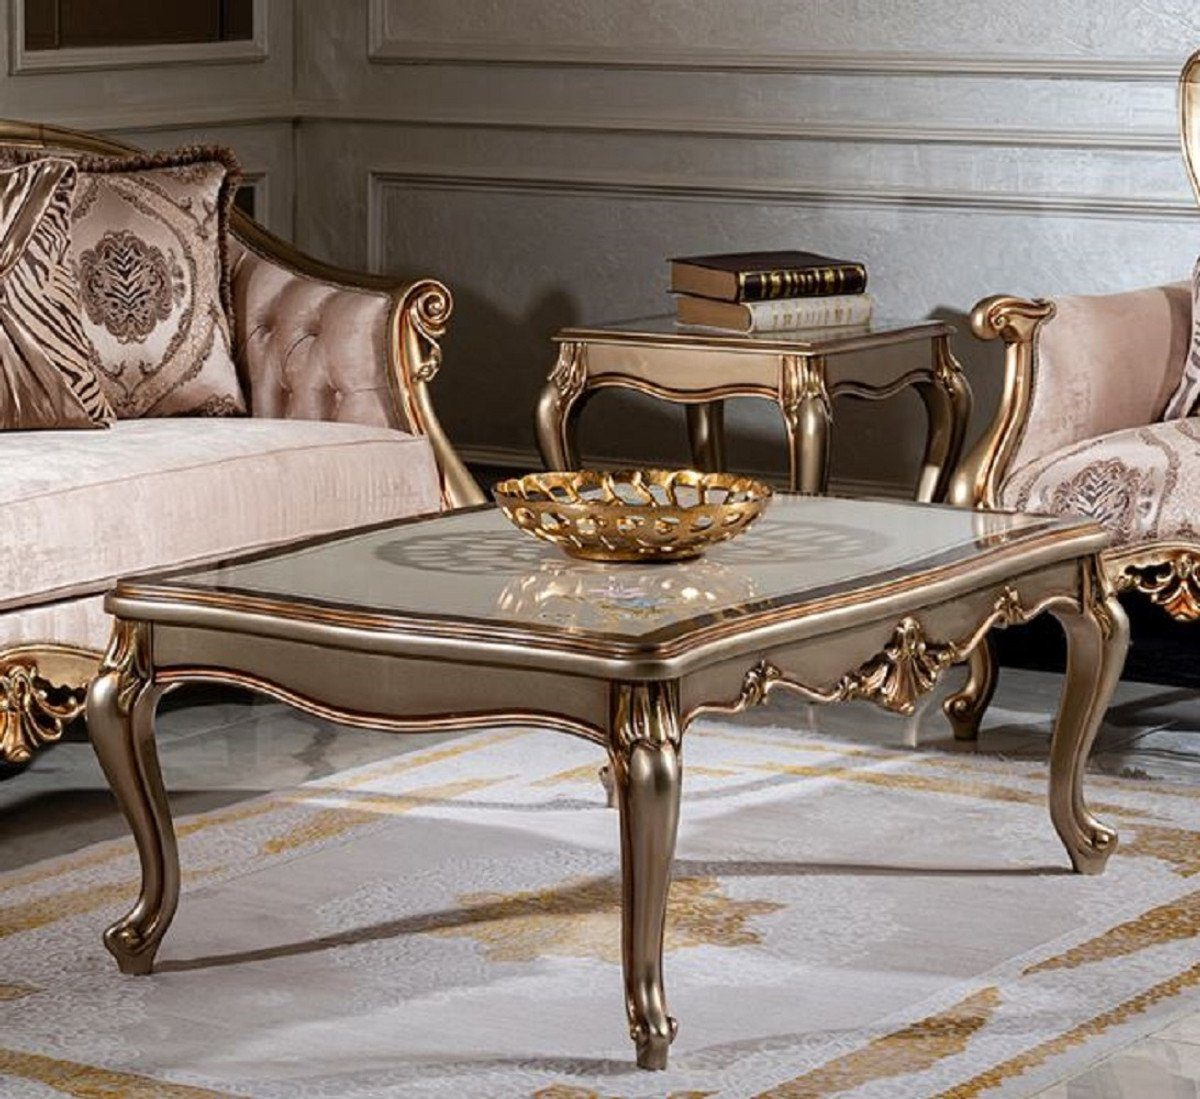 - / Gold Couchtisch Casa Padrino Luxus Möbel Handgefertigter Wohnzimmertisch Barockstil Massivholz Silber Barock - Couchtisch im Weiß /